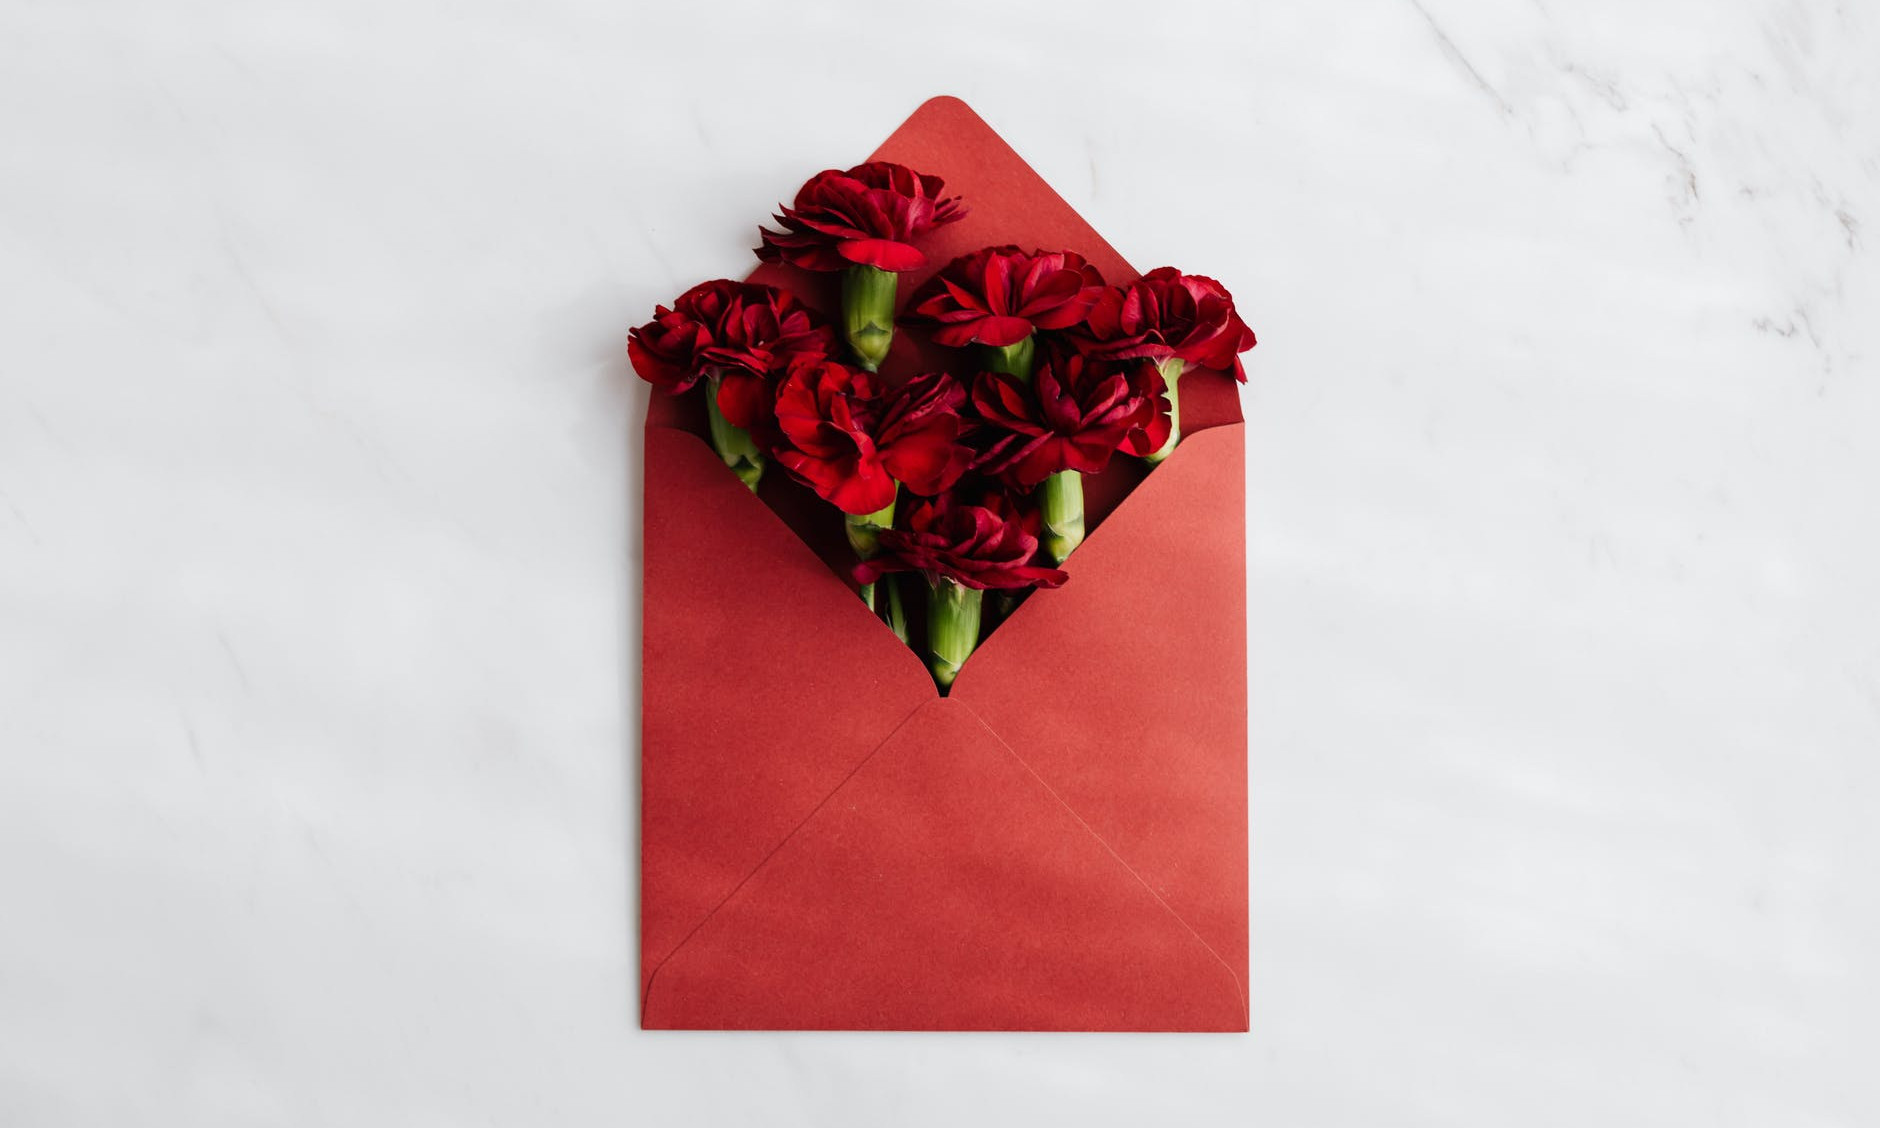 Ein Bild zeigt einen roten Umschlag, der mit Blumen gefüllt ist. Dies soll Anerkennung und Wertschätzung widerspiegeln